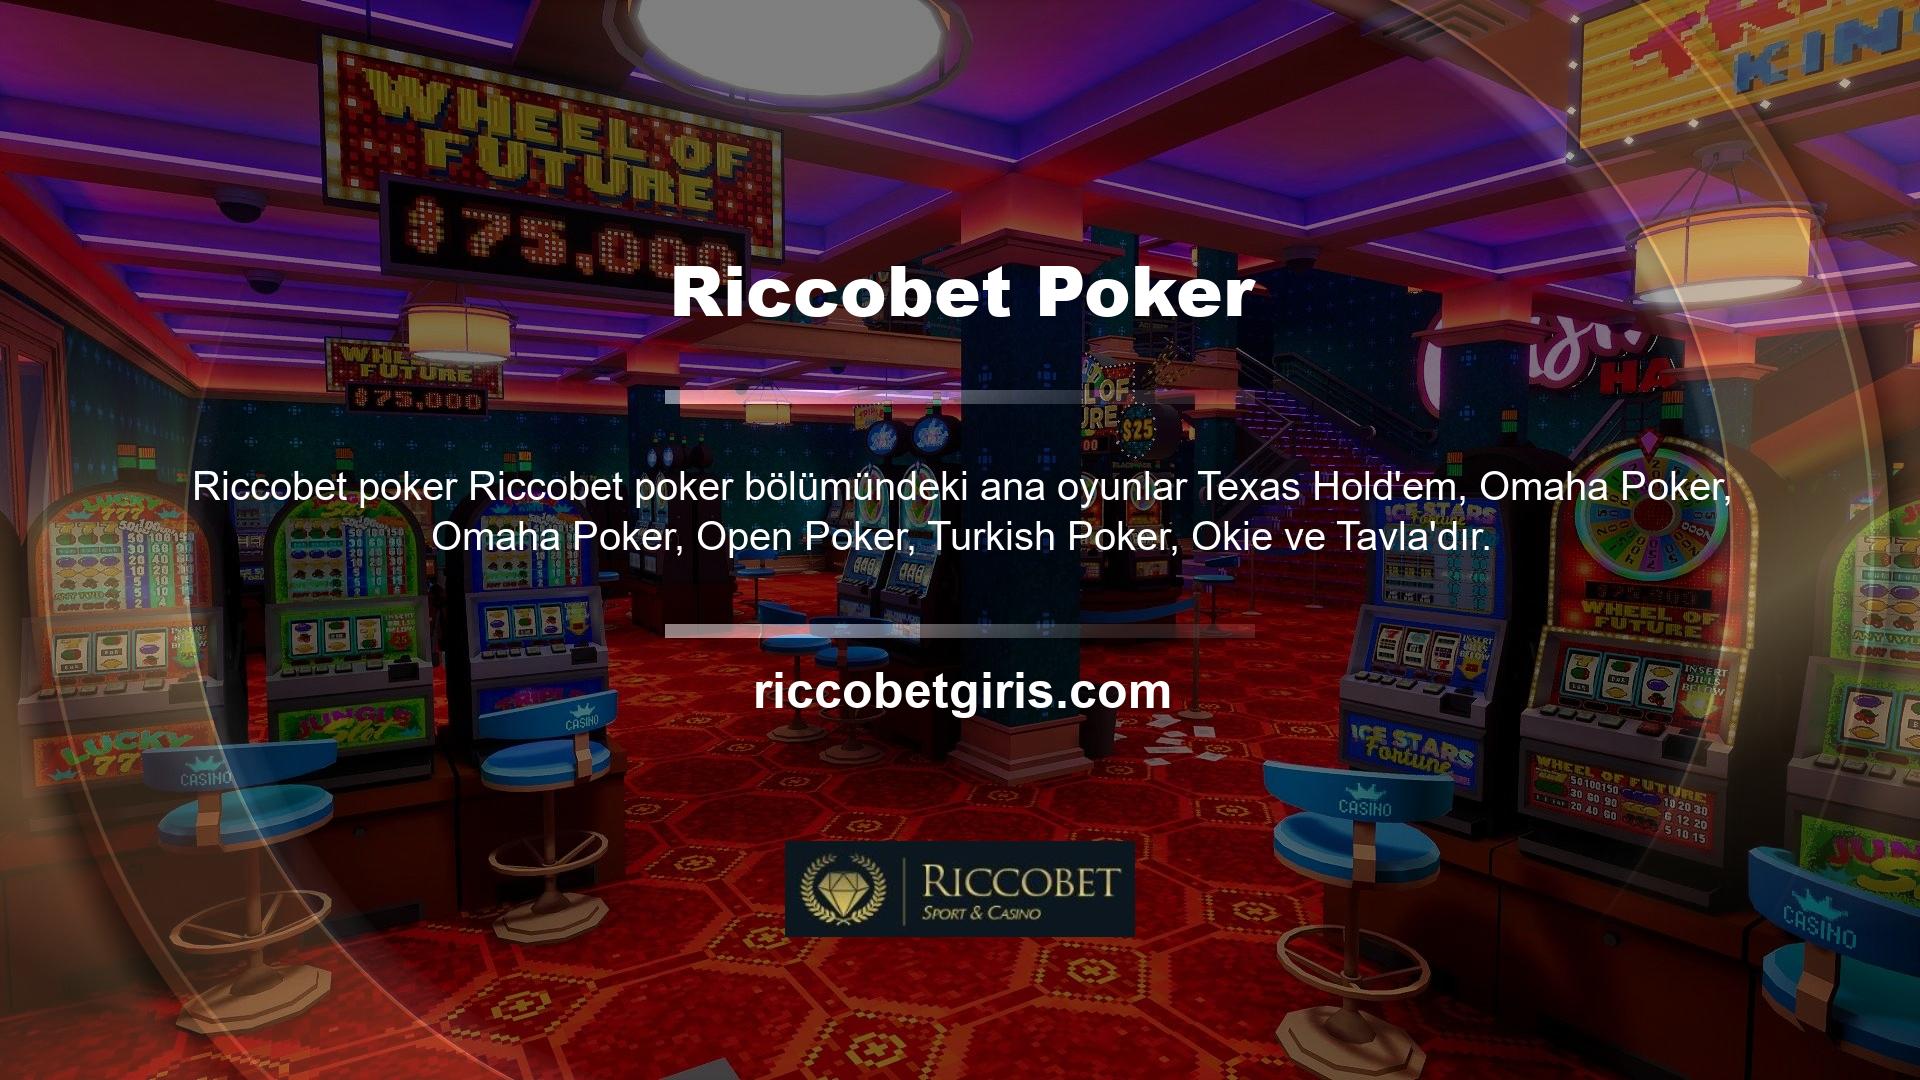 Poker alanına girdiğiniz anda ekranda beliren ilk görüntü, tüm poker odalarının toplam bakiyesi ve tüm poker odalarındaki çevrimiçi oyuncu sayısıdır